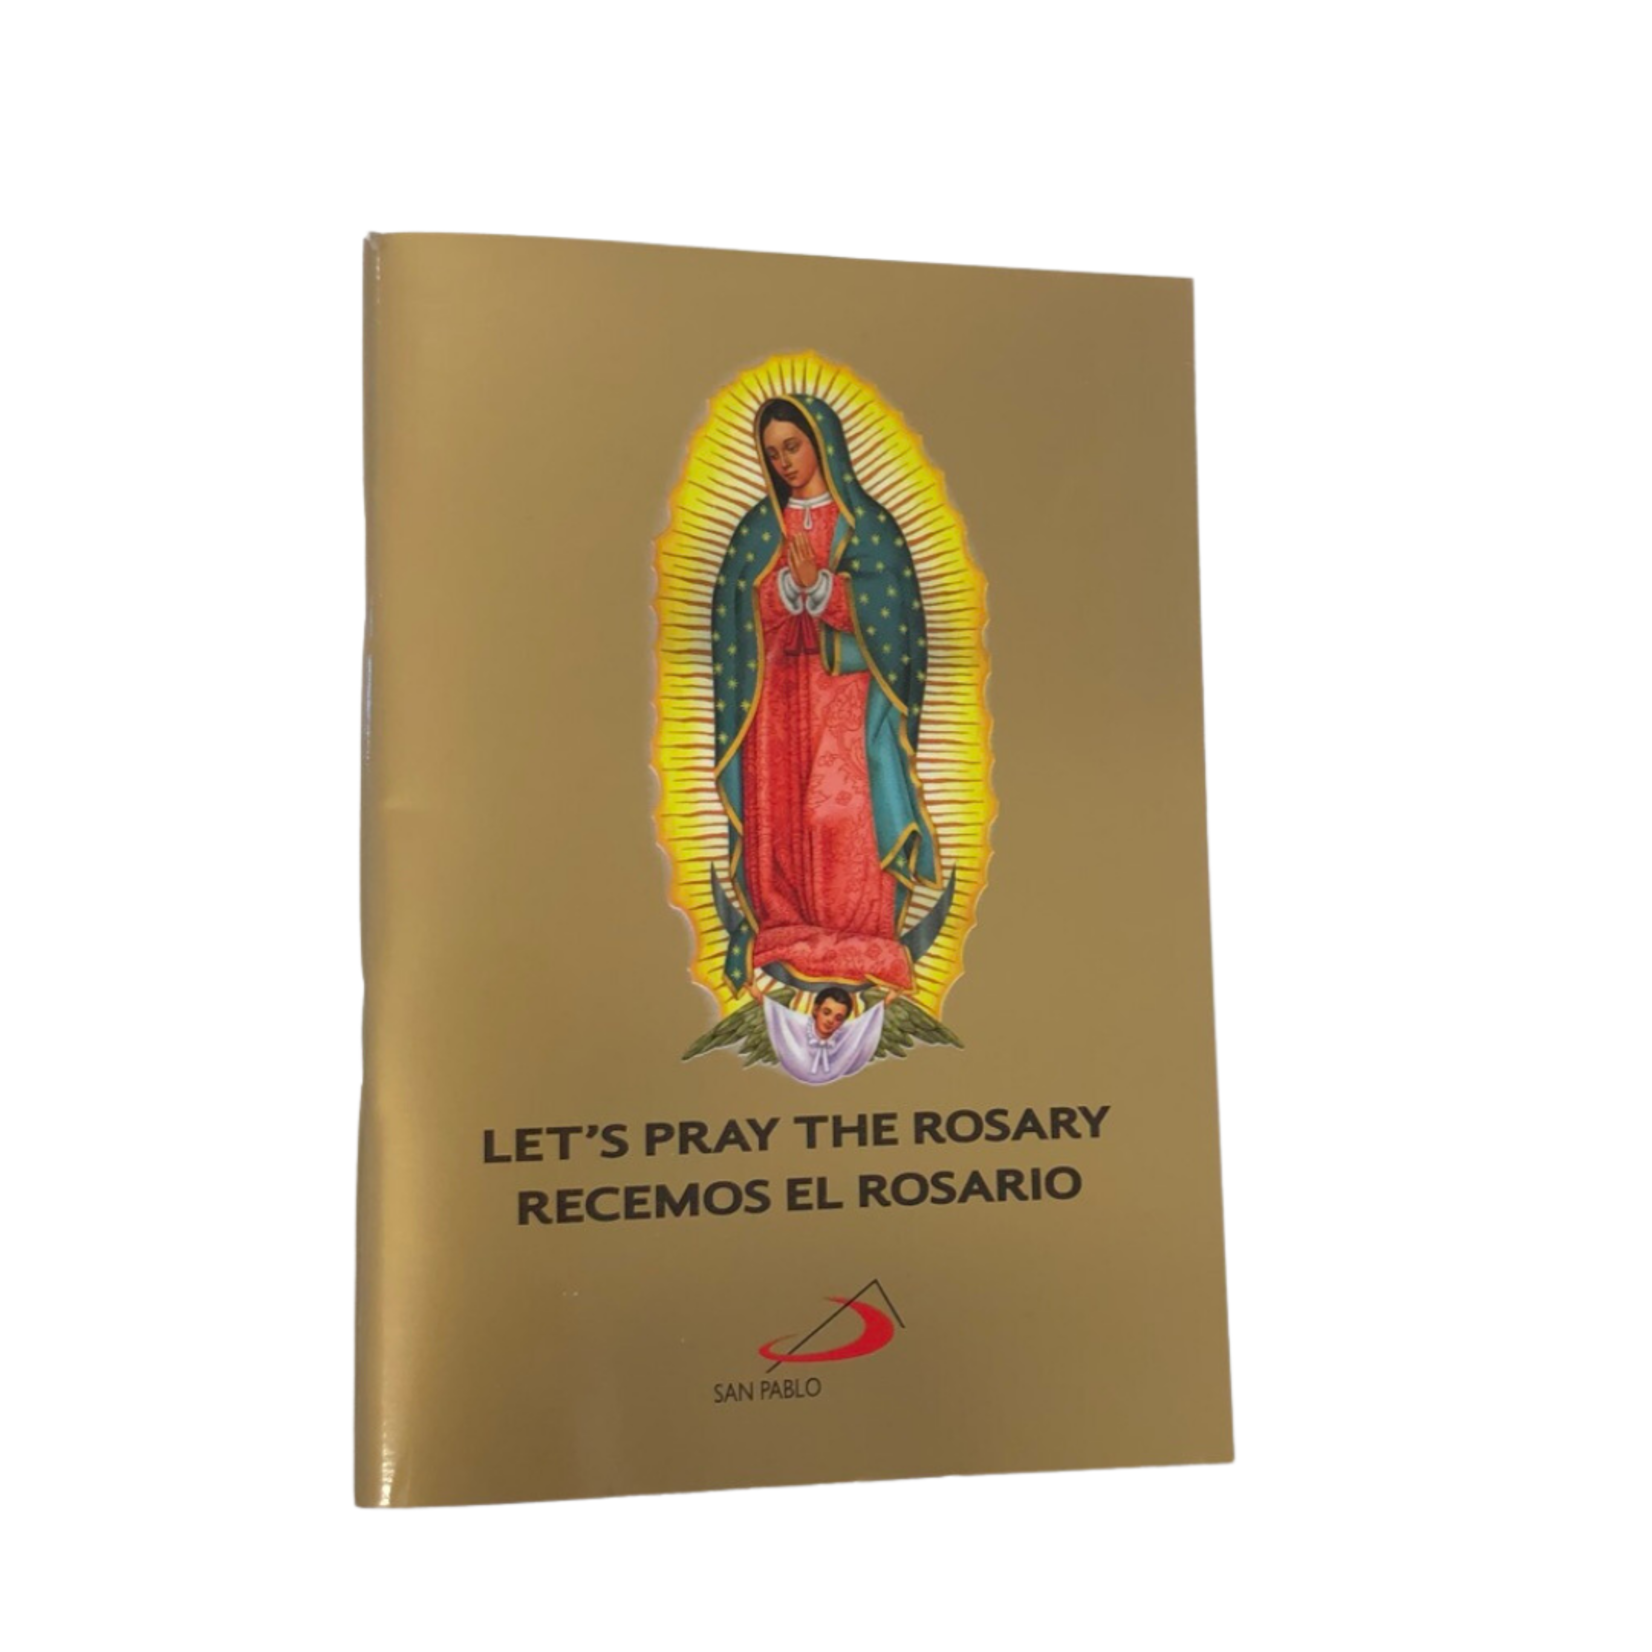 Let's Pray the Rosary/ Recemos El Rosario Bilingual Booklet